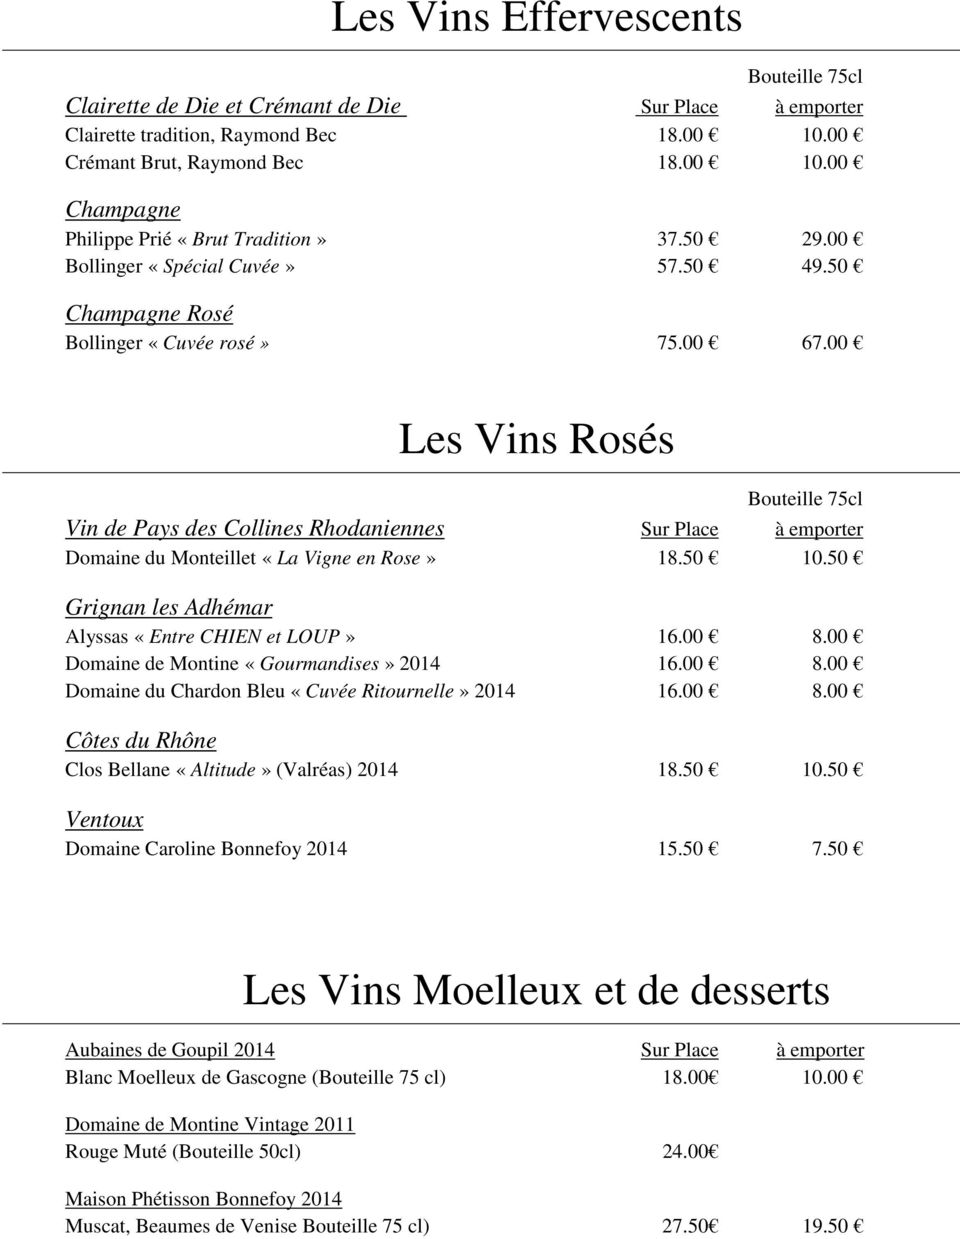 00 Les Vins Rosés Vin de Pays des Collines Rhodaniennes Sur Place à emporter Domaine du Monteillet «La Vigne en Rose» 18.50 10.50 Grignan les Adhémar Alyssas «Entre CHIEN et LOUP» 16.00 8.